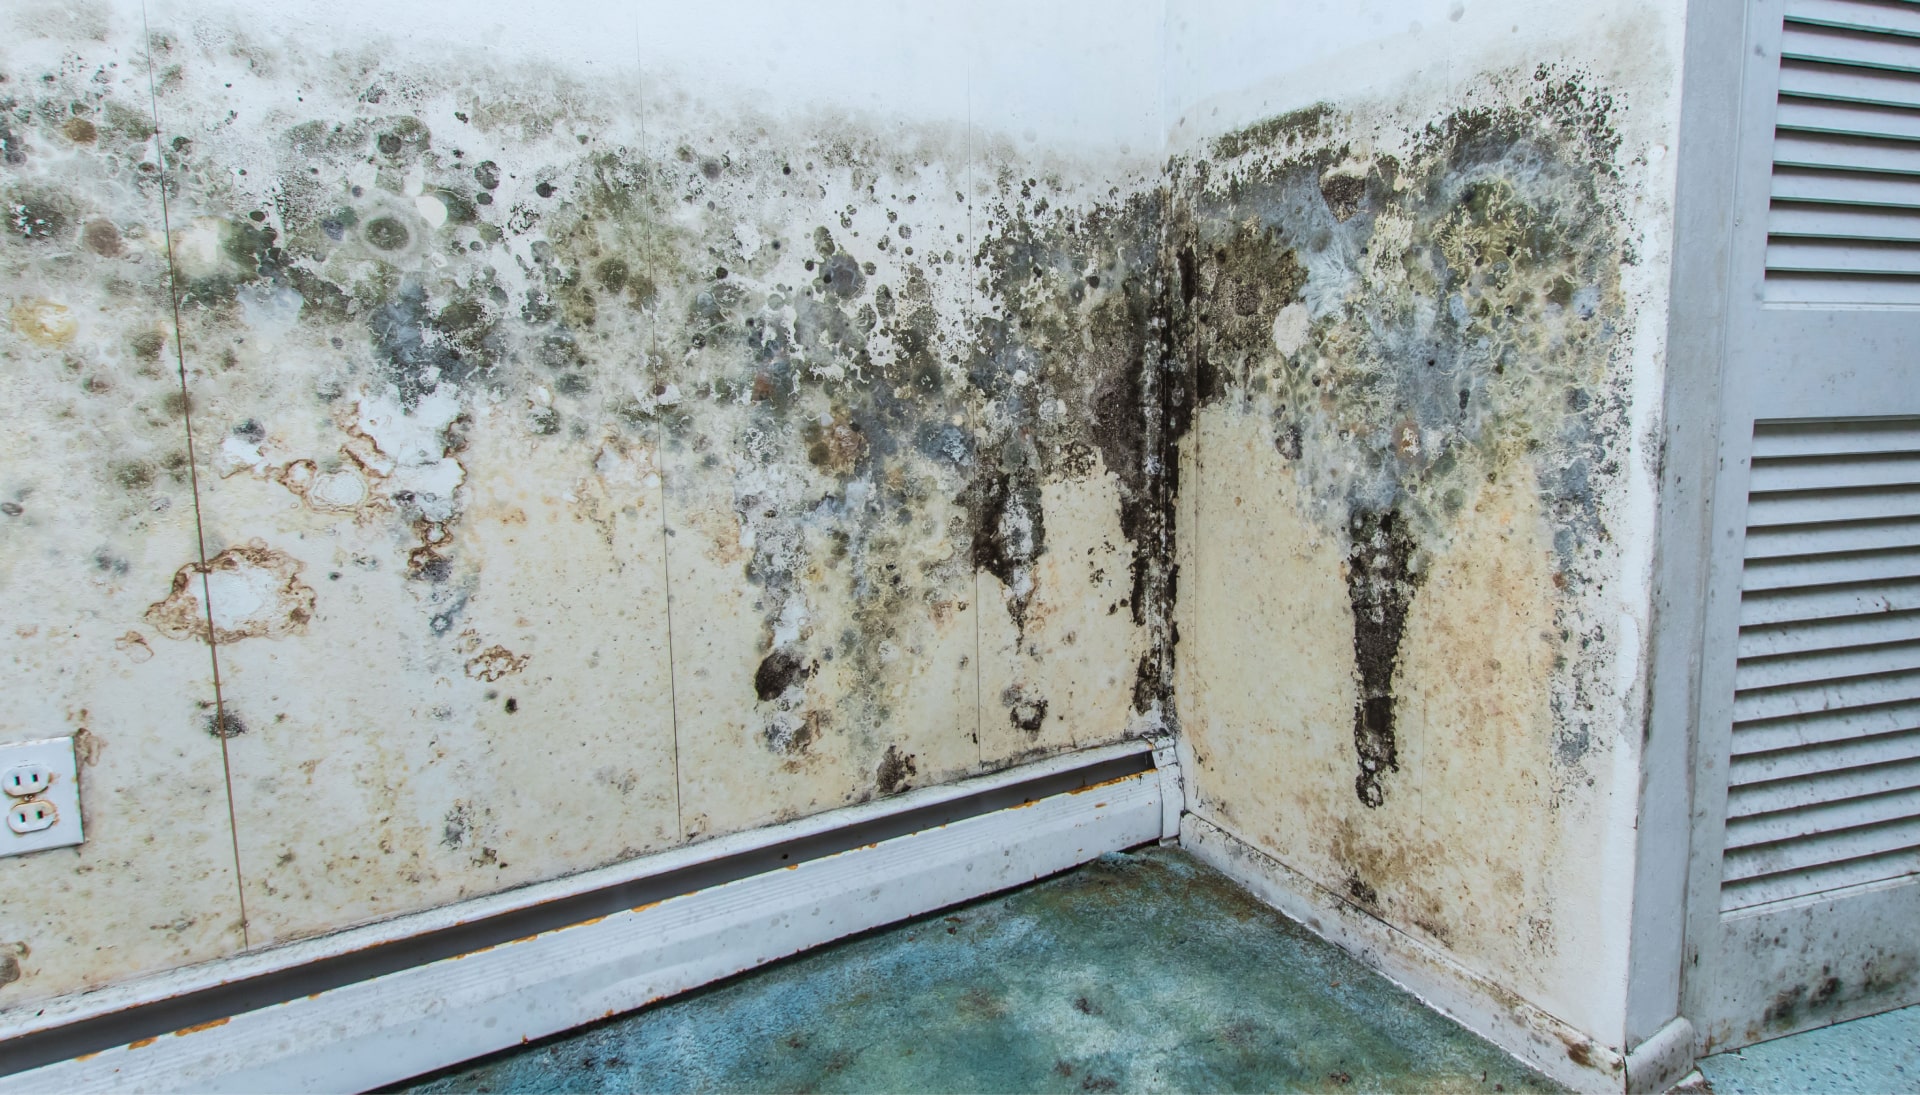 Mold-Damager-Odor-Control in Delray Beach